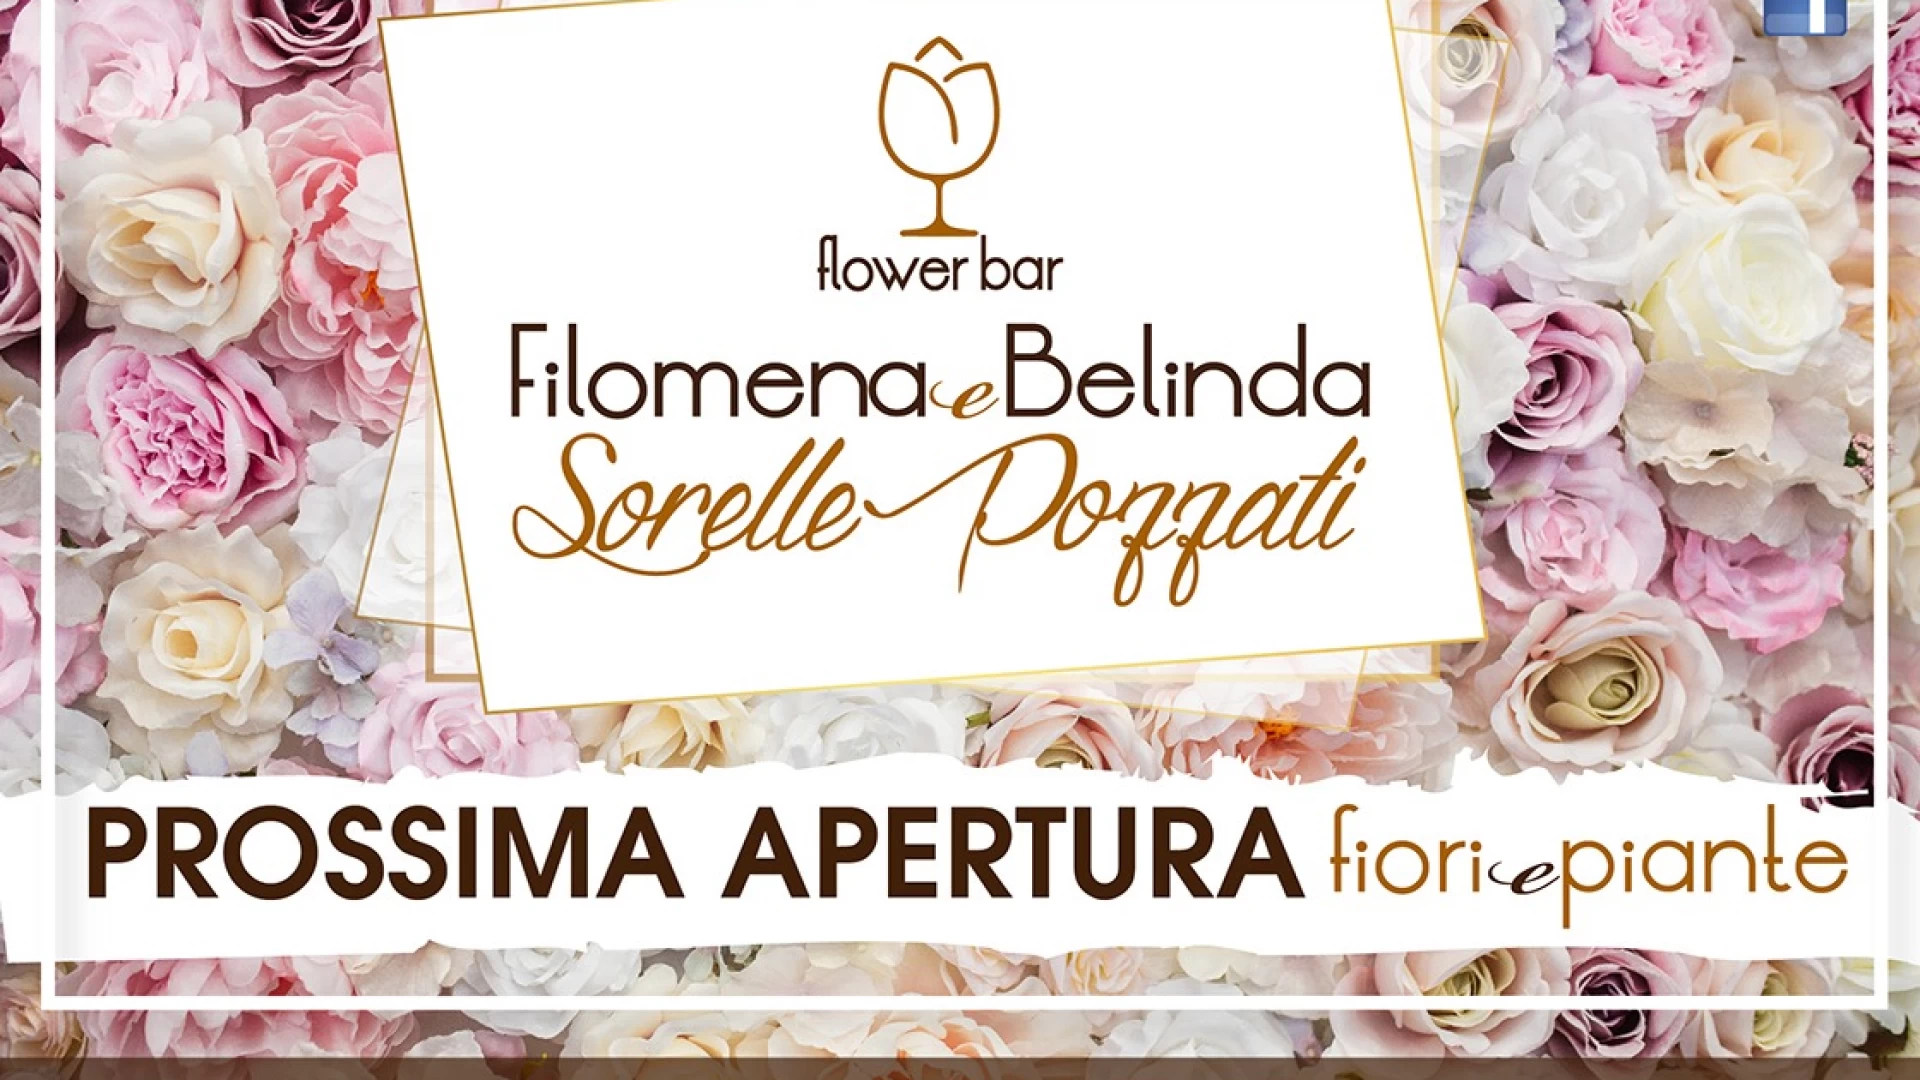 Ad Isernia apre il Flower Bar delle sorelle Filomena e Belinda Pozzati. Piante, fiori ed un modo innovativo di “coccolare” tutti i clienti.